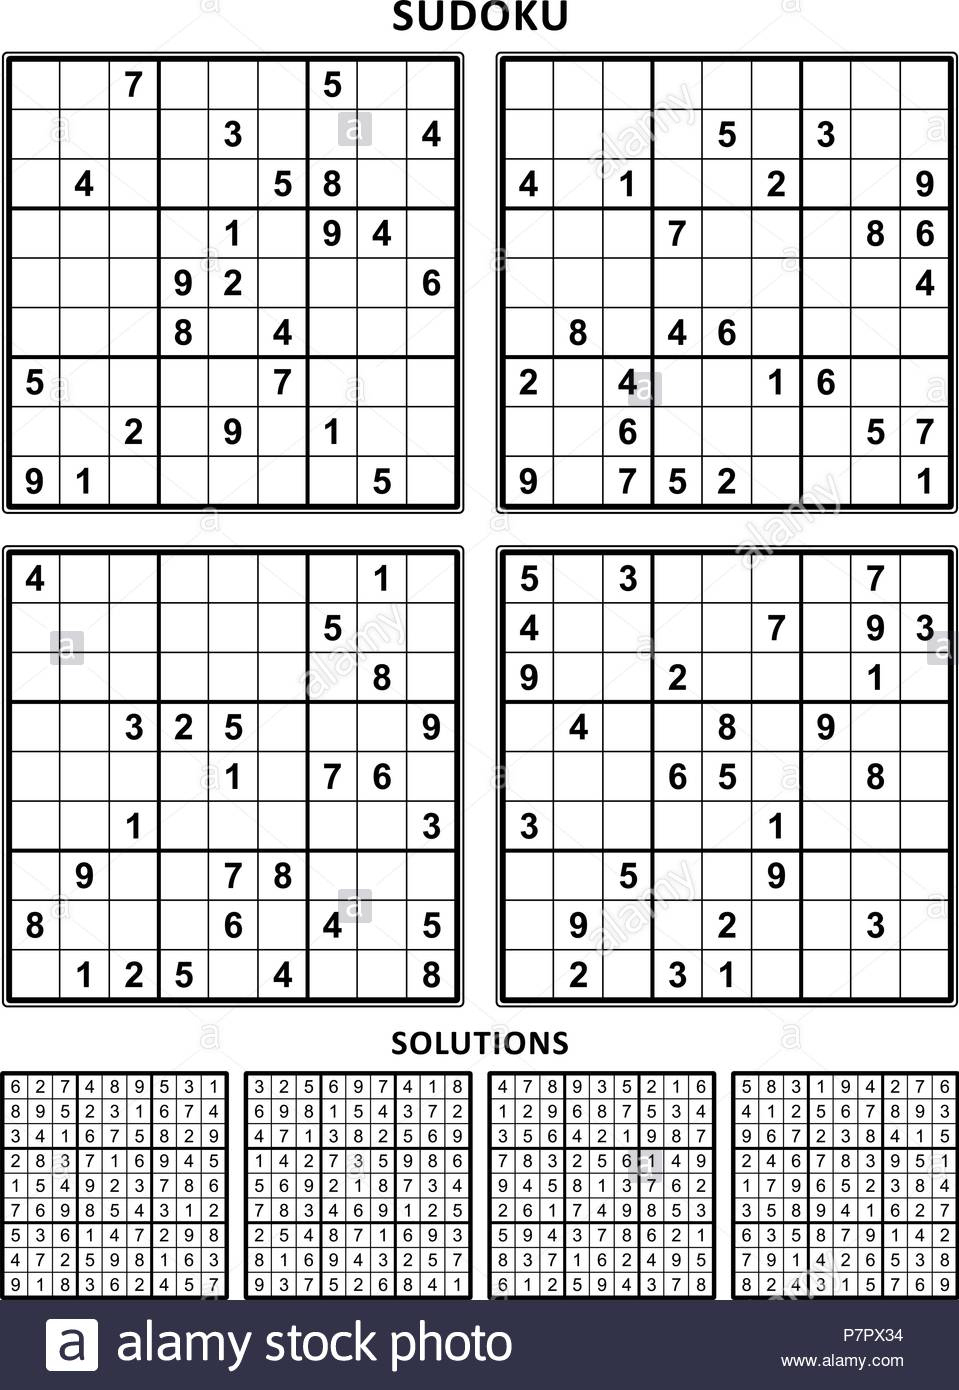 printable-sudoku-with-answers-sudoku-printables